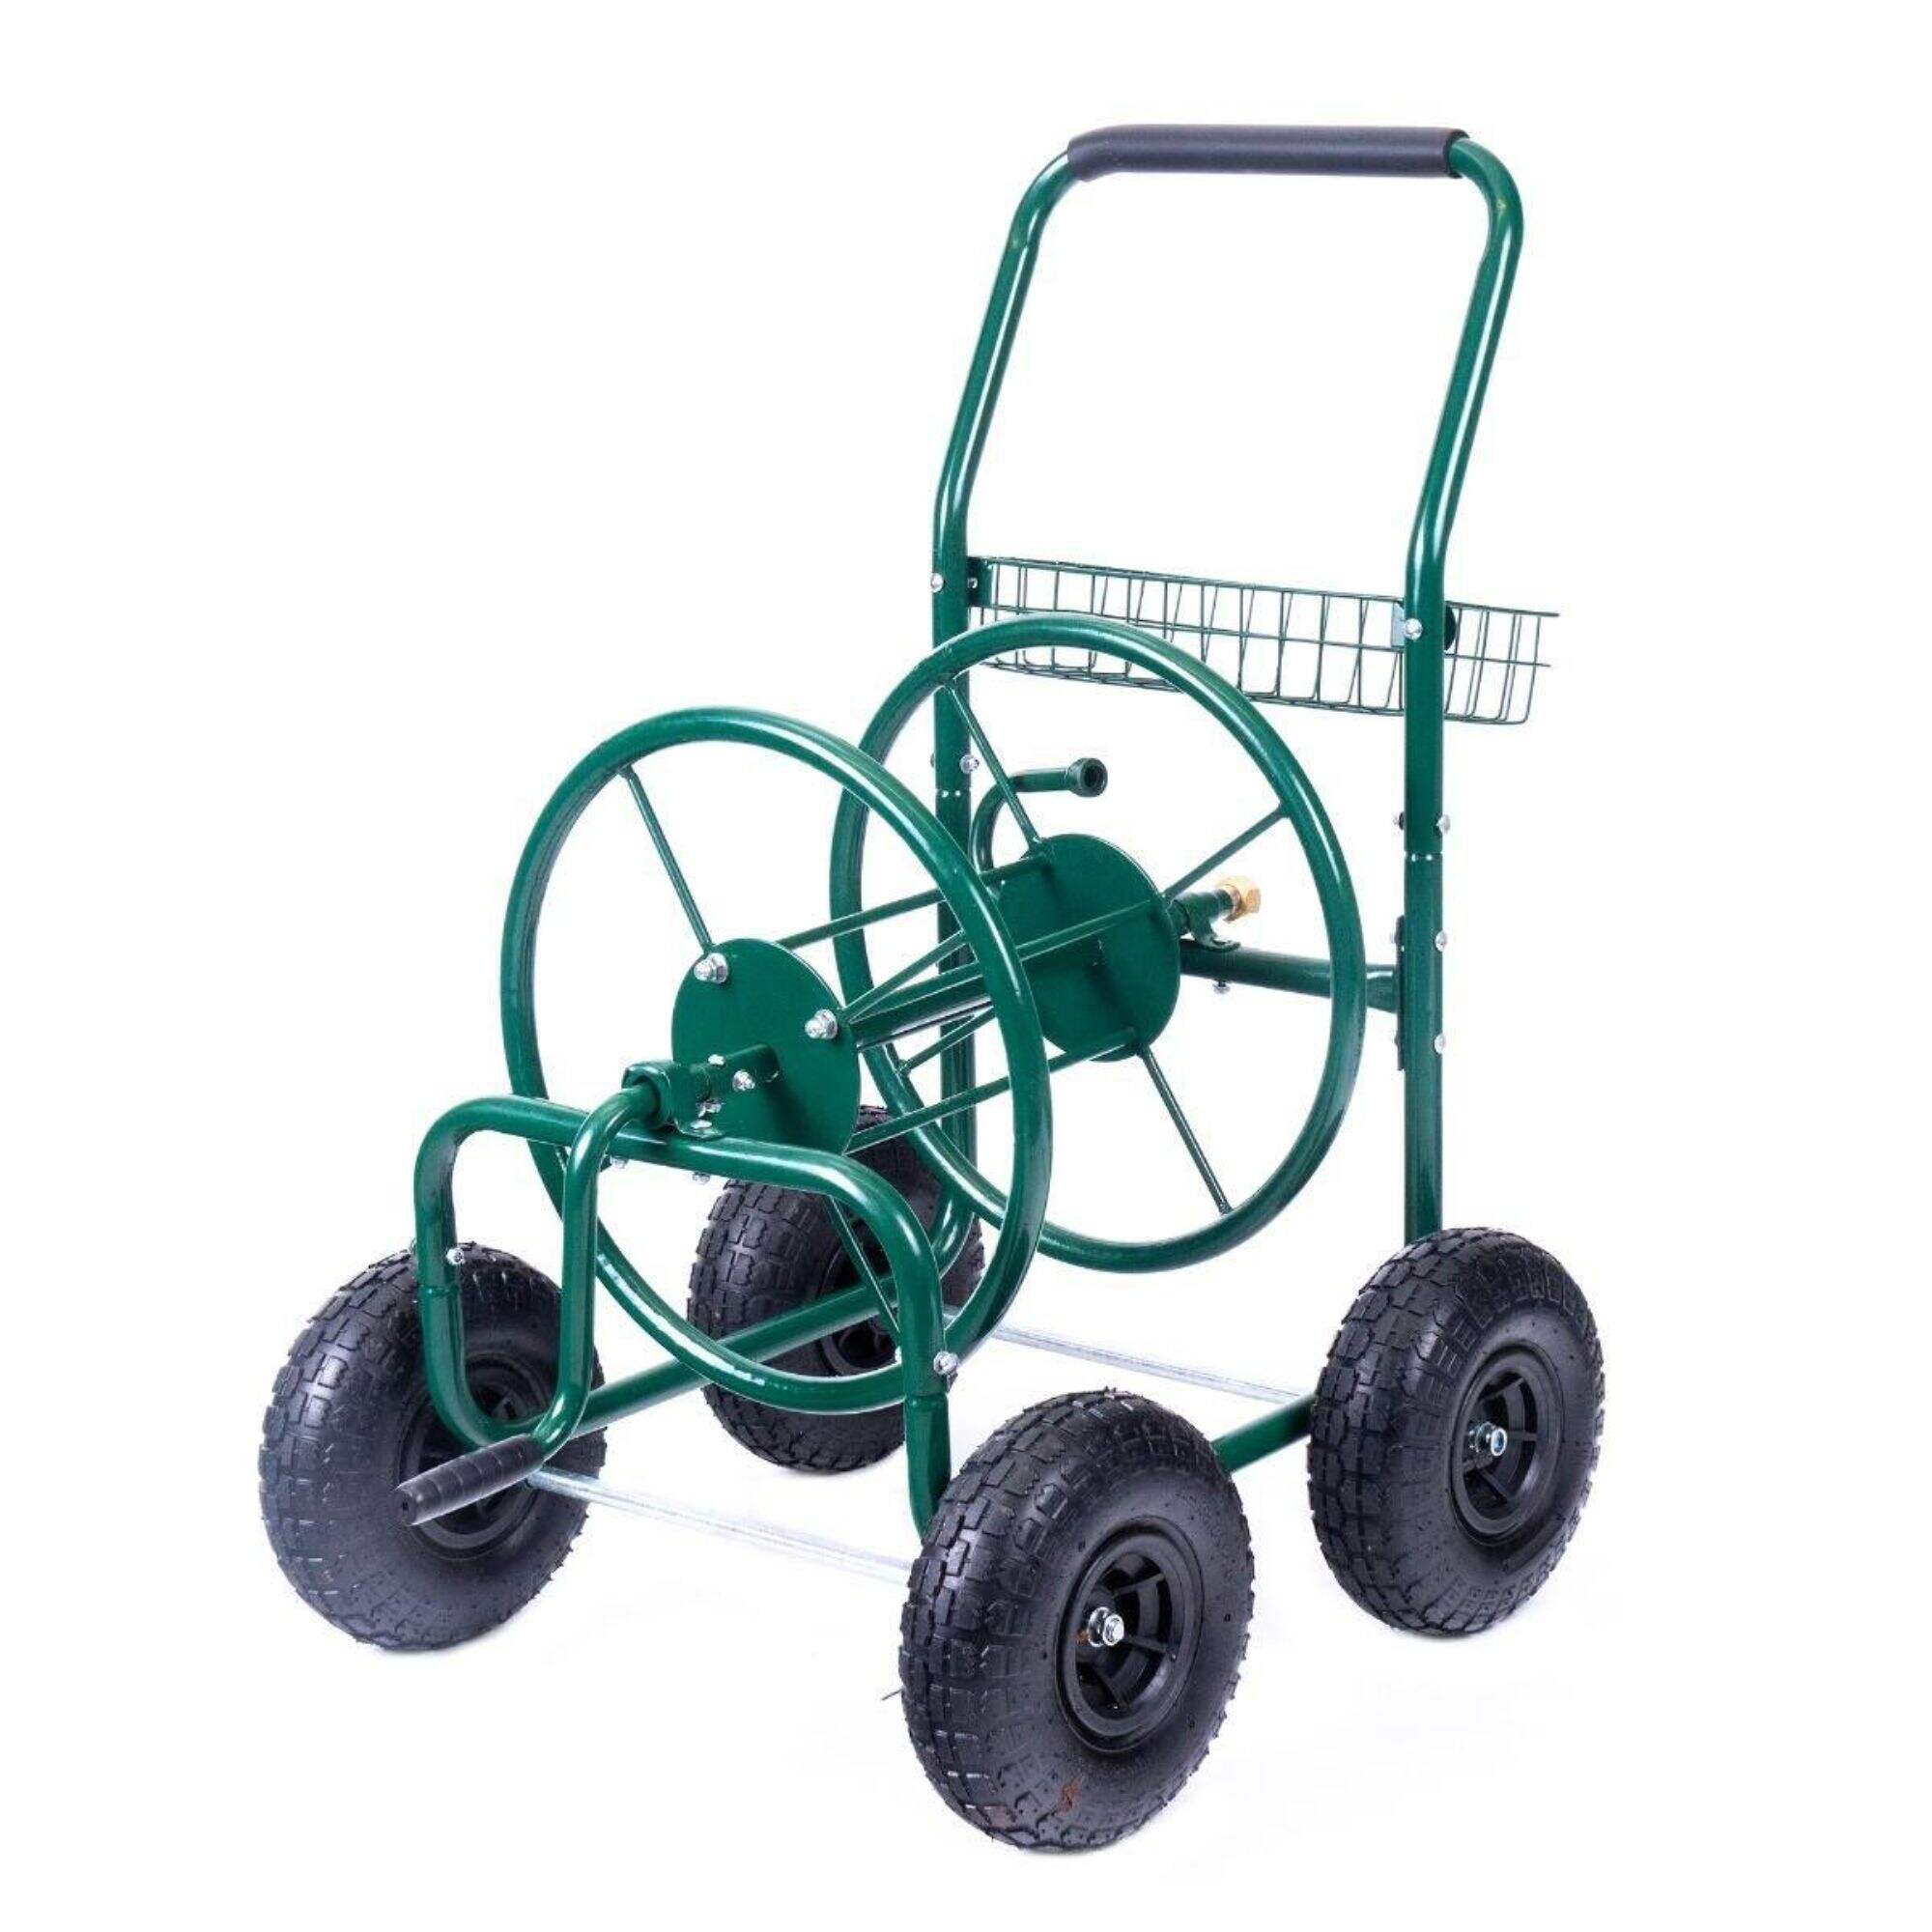 TC1851 Wytrzymały wózek na wąż, metalowy wózek z bębenkiem na wąż ogrodowy do trawnika na zewnątrz, z 4 kołami pneumatycznymi, koszem do przechowywania